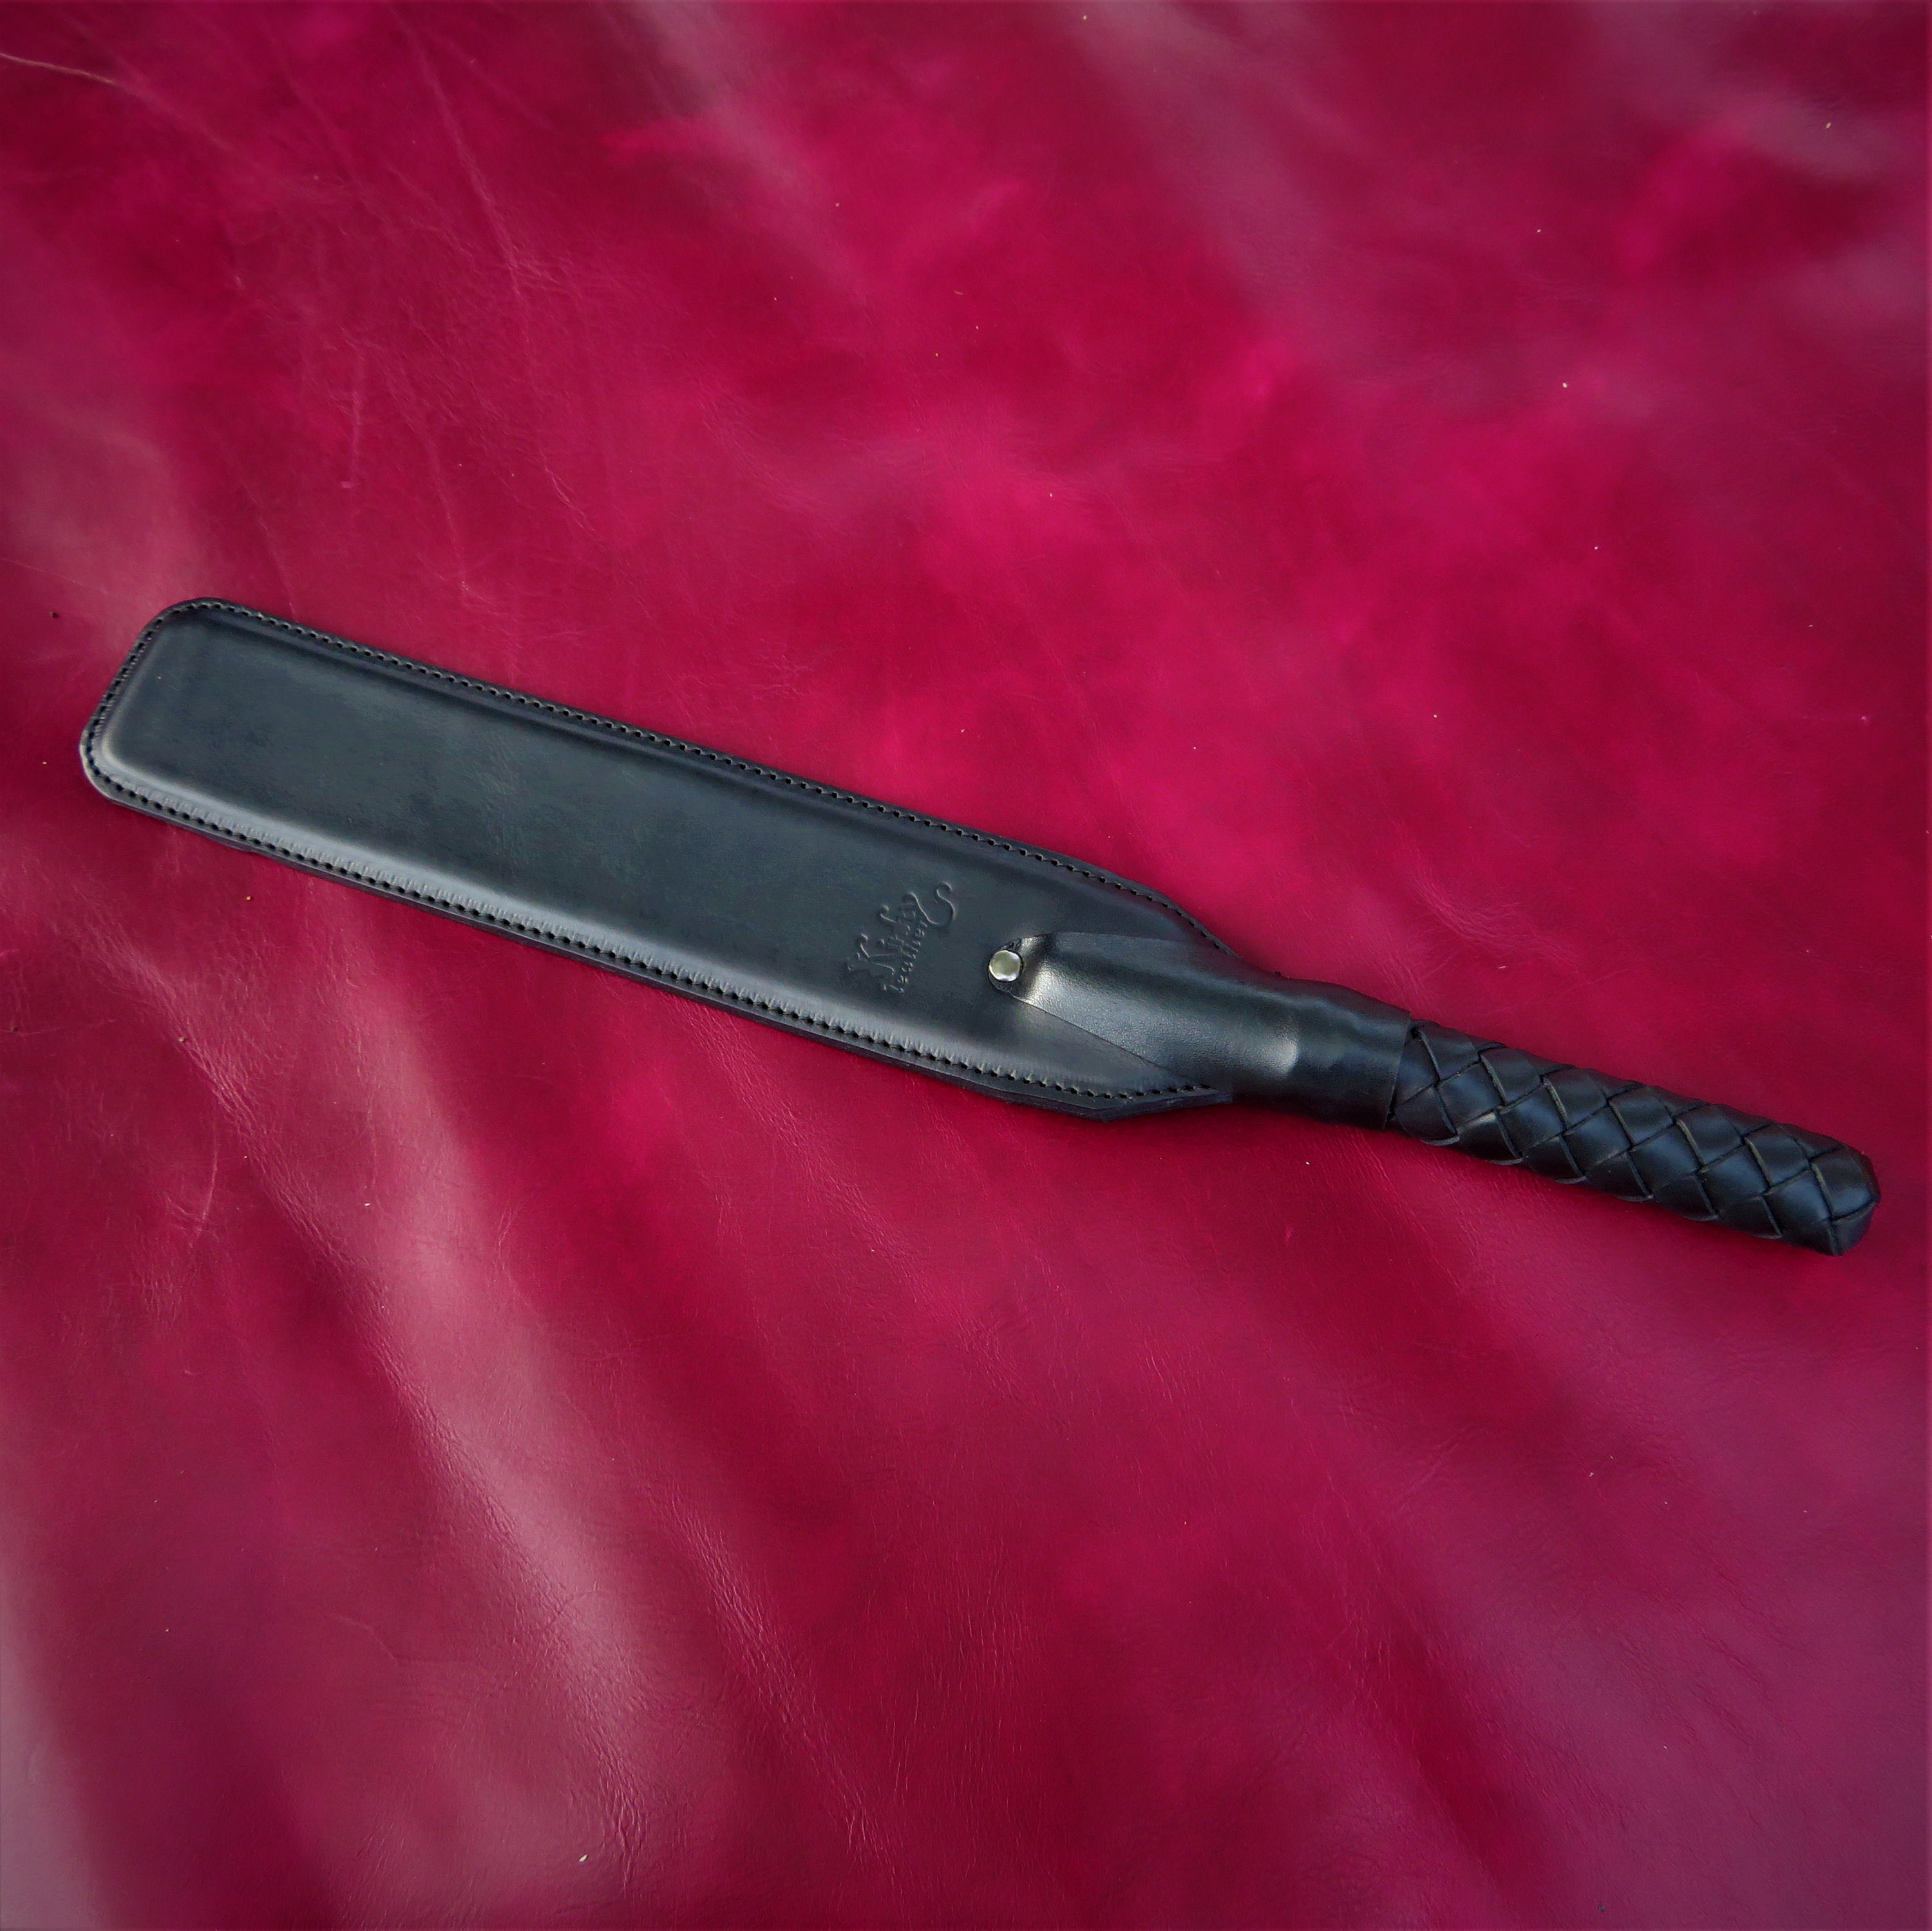 UPKO Leather Spanking Paddle (Black)